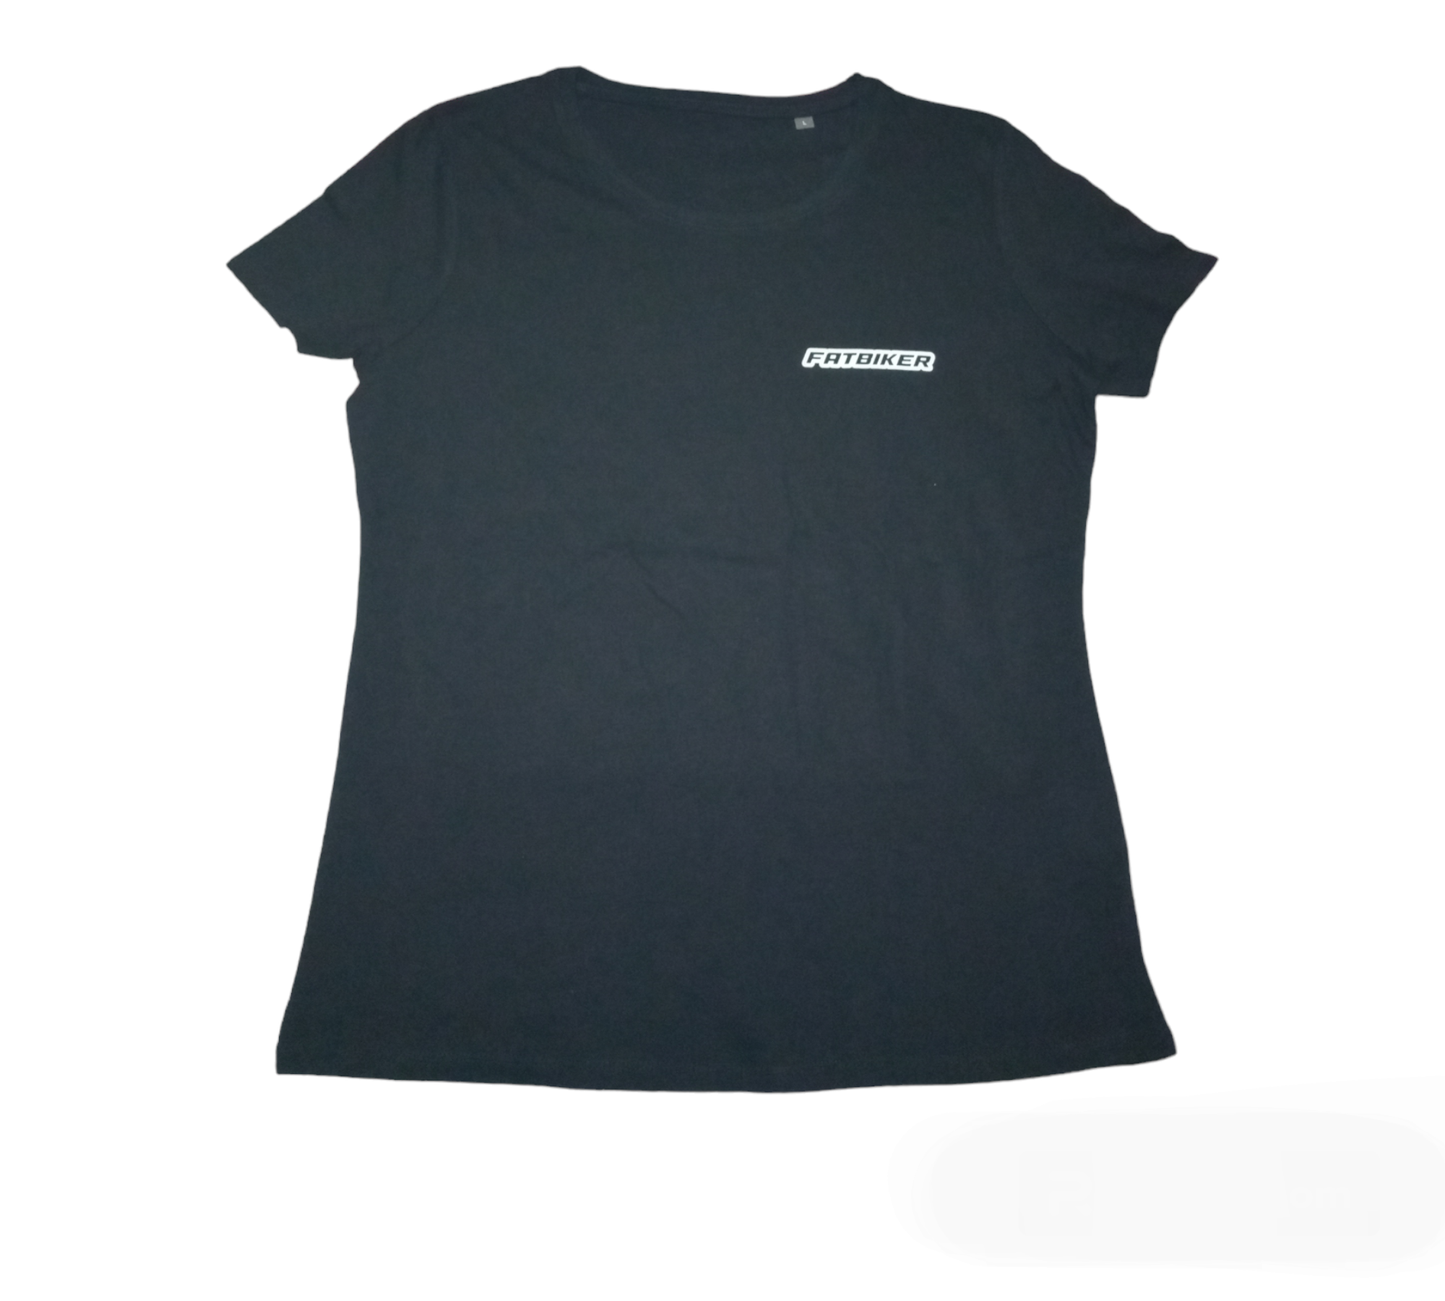 Tee-shirt "Fatbiker" femme